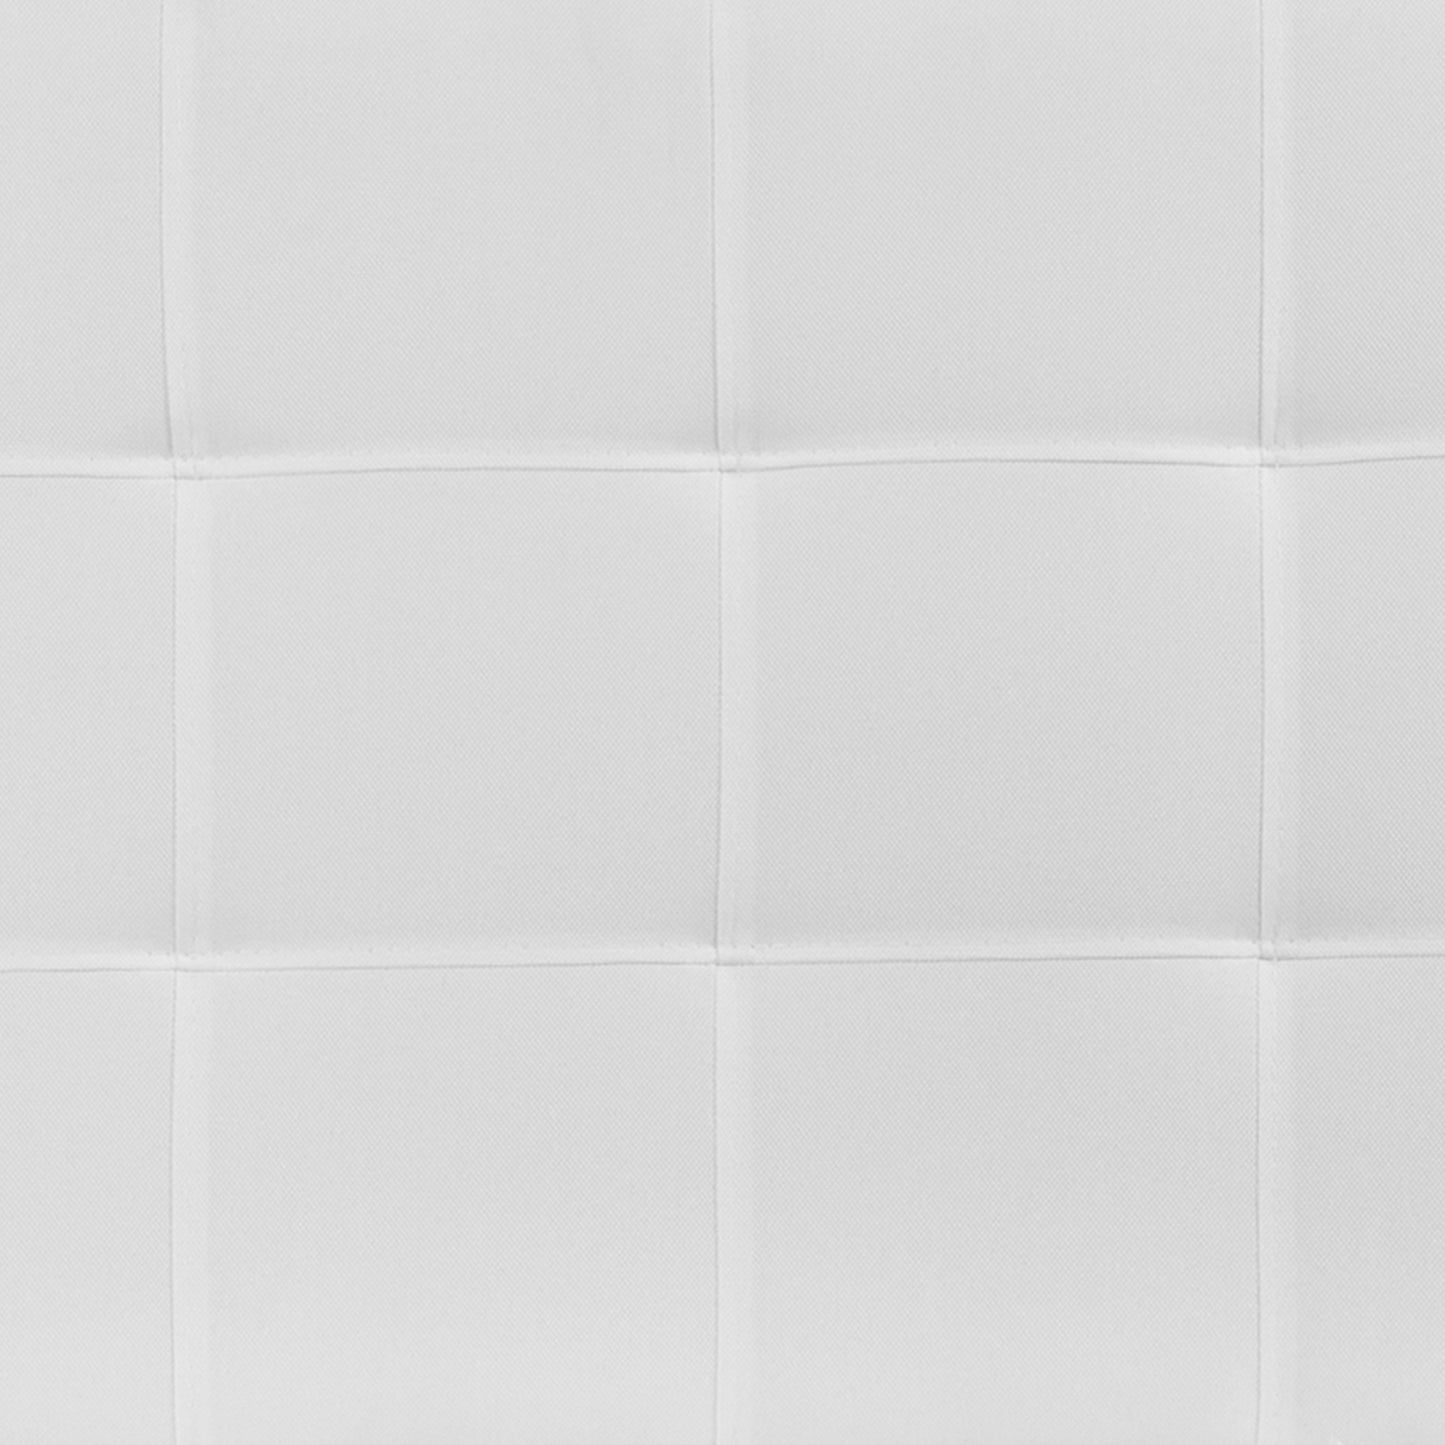 Queen Headboard-White Fabric HG-HB1704-Q-W-GG